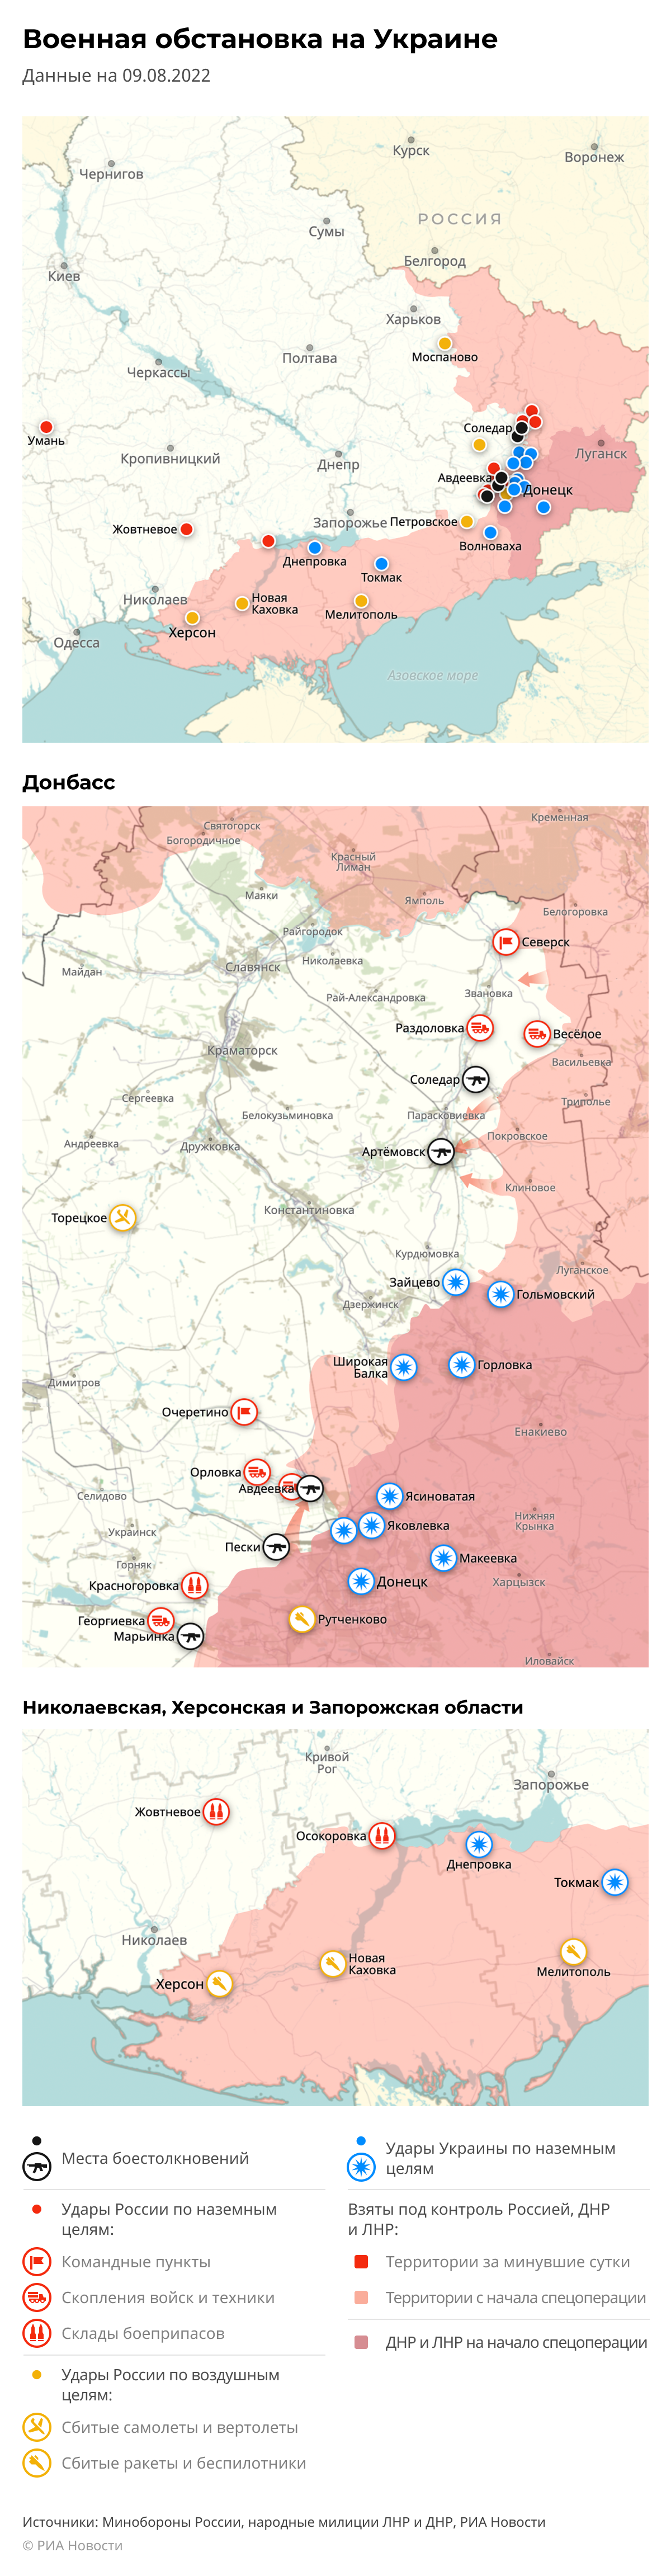 Карта спецоперации Вооруженных сил России на Украине на 09.08.2022